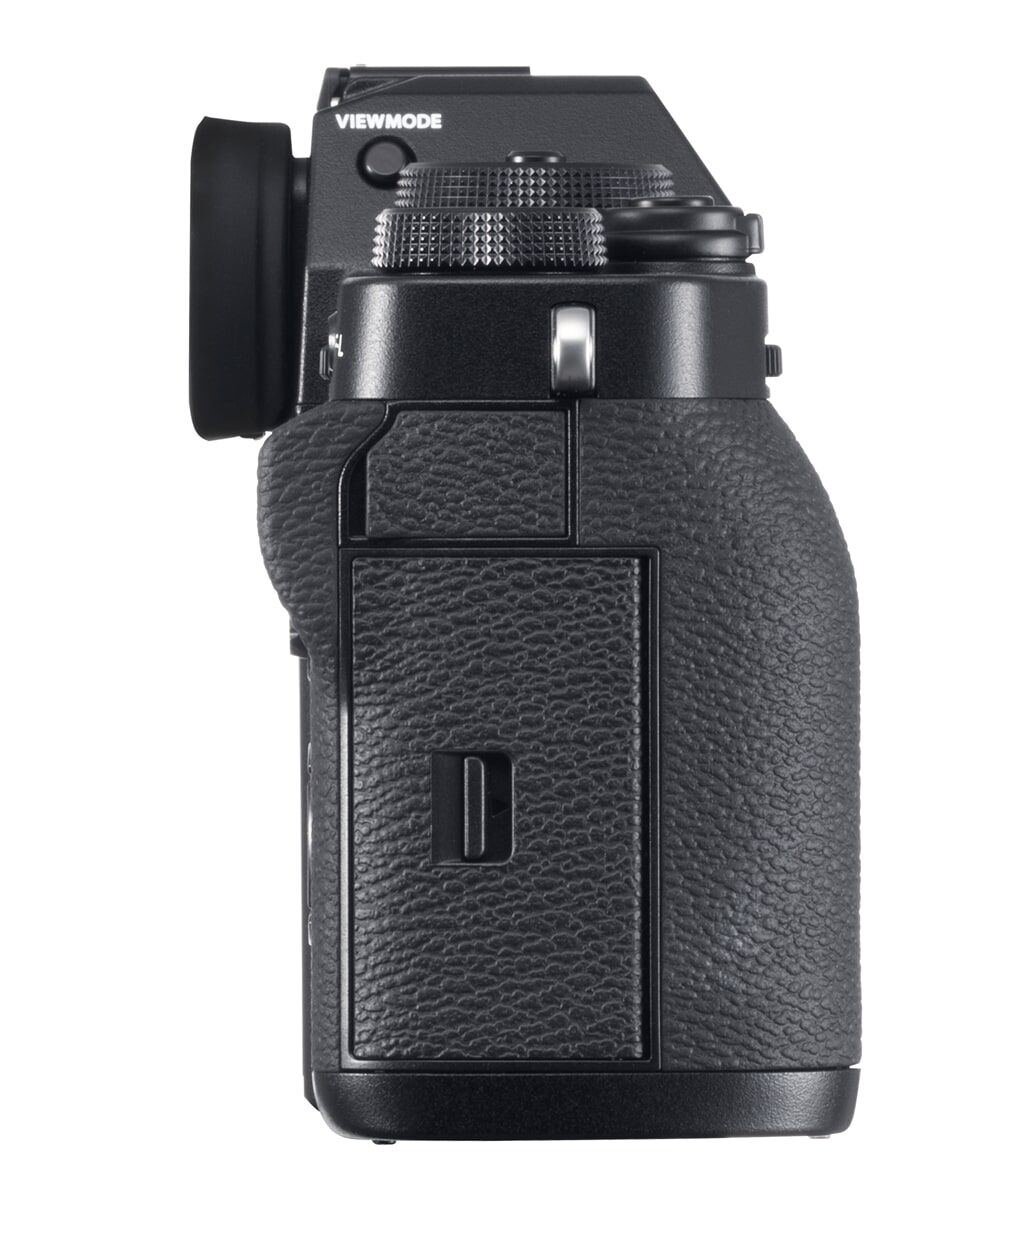 Fujifilm X-T3 schwarz Gehäuse